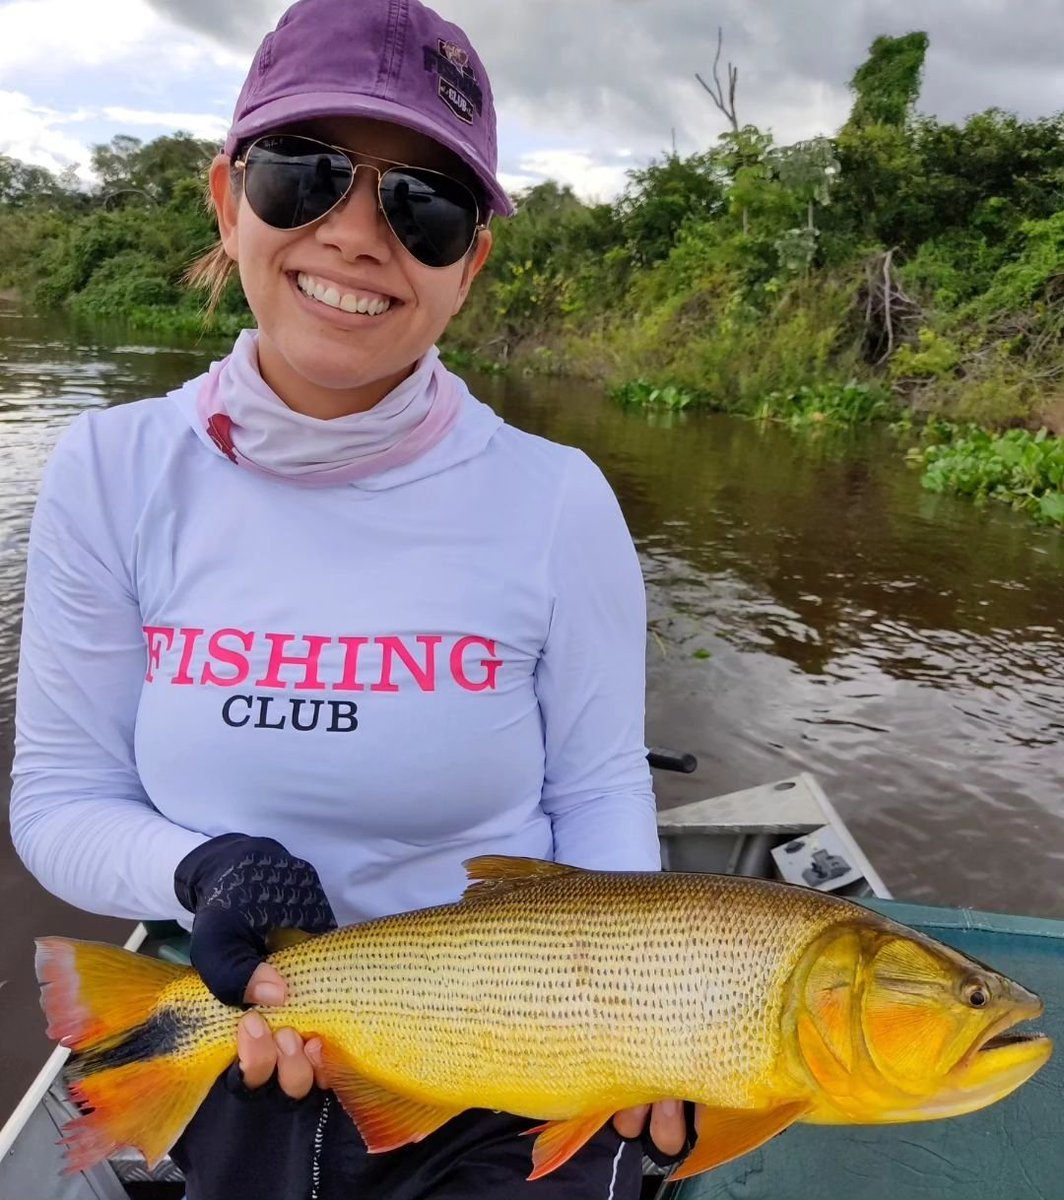 📸 Foto da parceira Drica Operação @tucunafox diretamente do Pantanal! Show🧢🔝✌🏻🎣

〰️〰️〰️〰️〰️〰️〰️〰️〰️〰️〰️〰️

#Fishingclub #Vistafishingclub #pescaesportiva #goldendorado #pantanal #dourado #humor #memes #fishingmemes #brasil #argentina #paraguay #viralreels